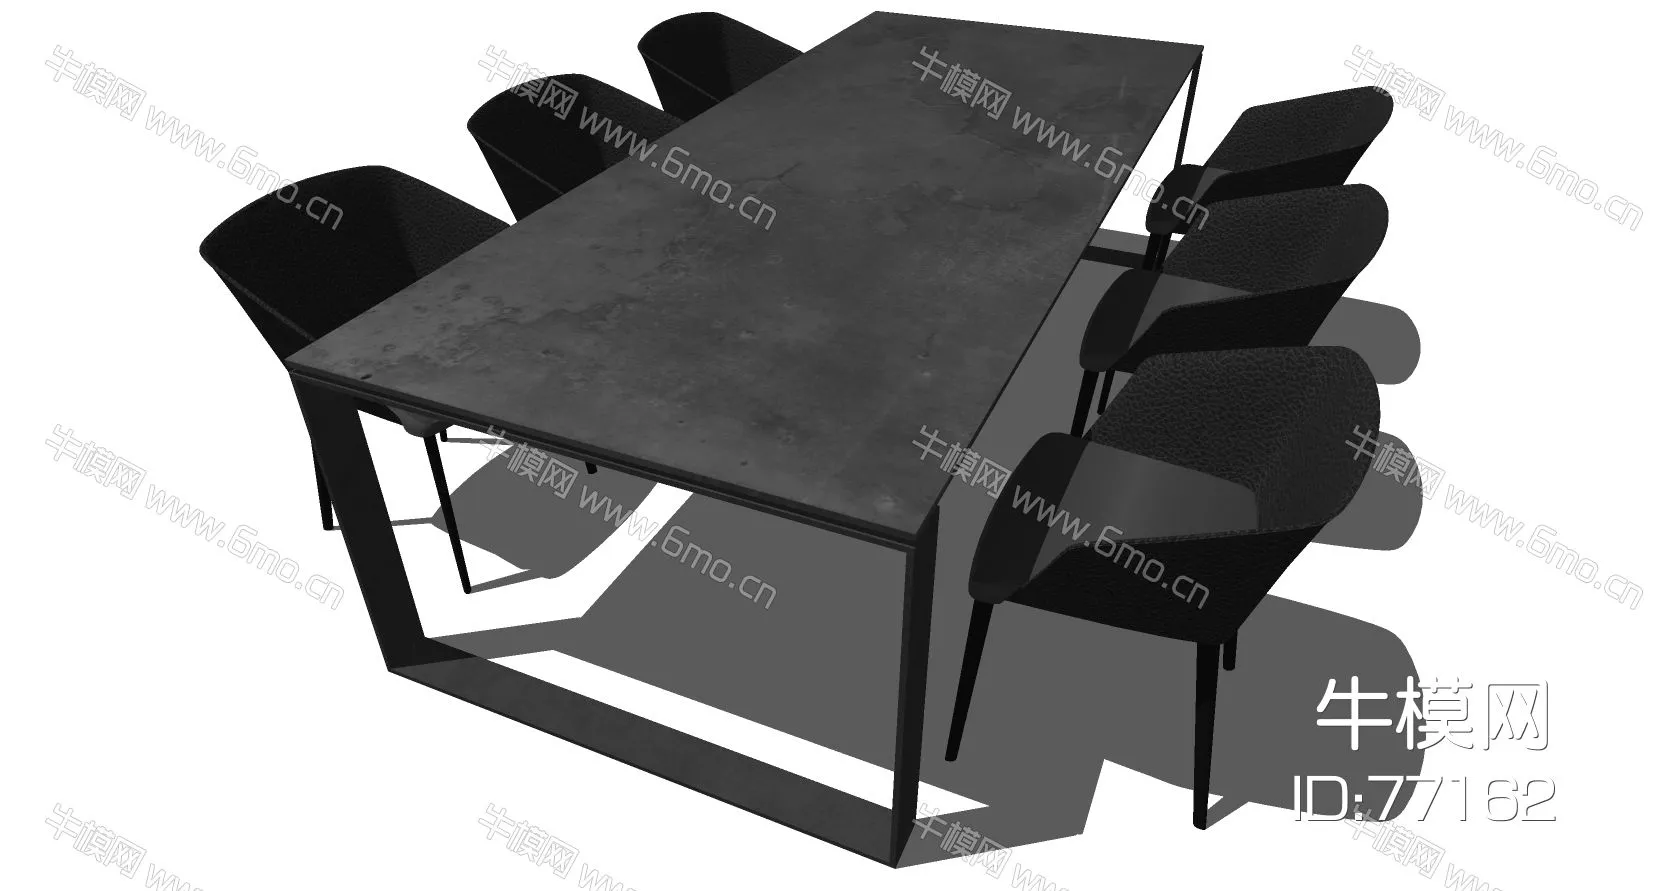 MODERN DINING TABLE SET - SKETCHUP 3D MODEL - ENSCAPE - 77162